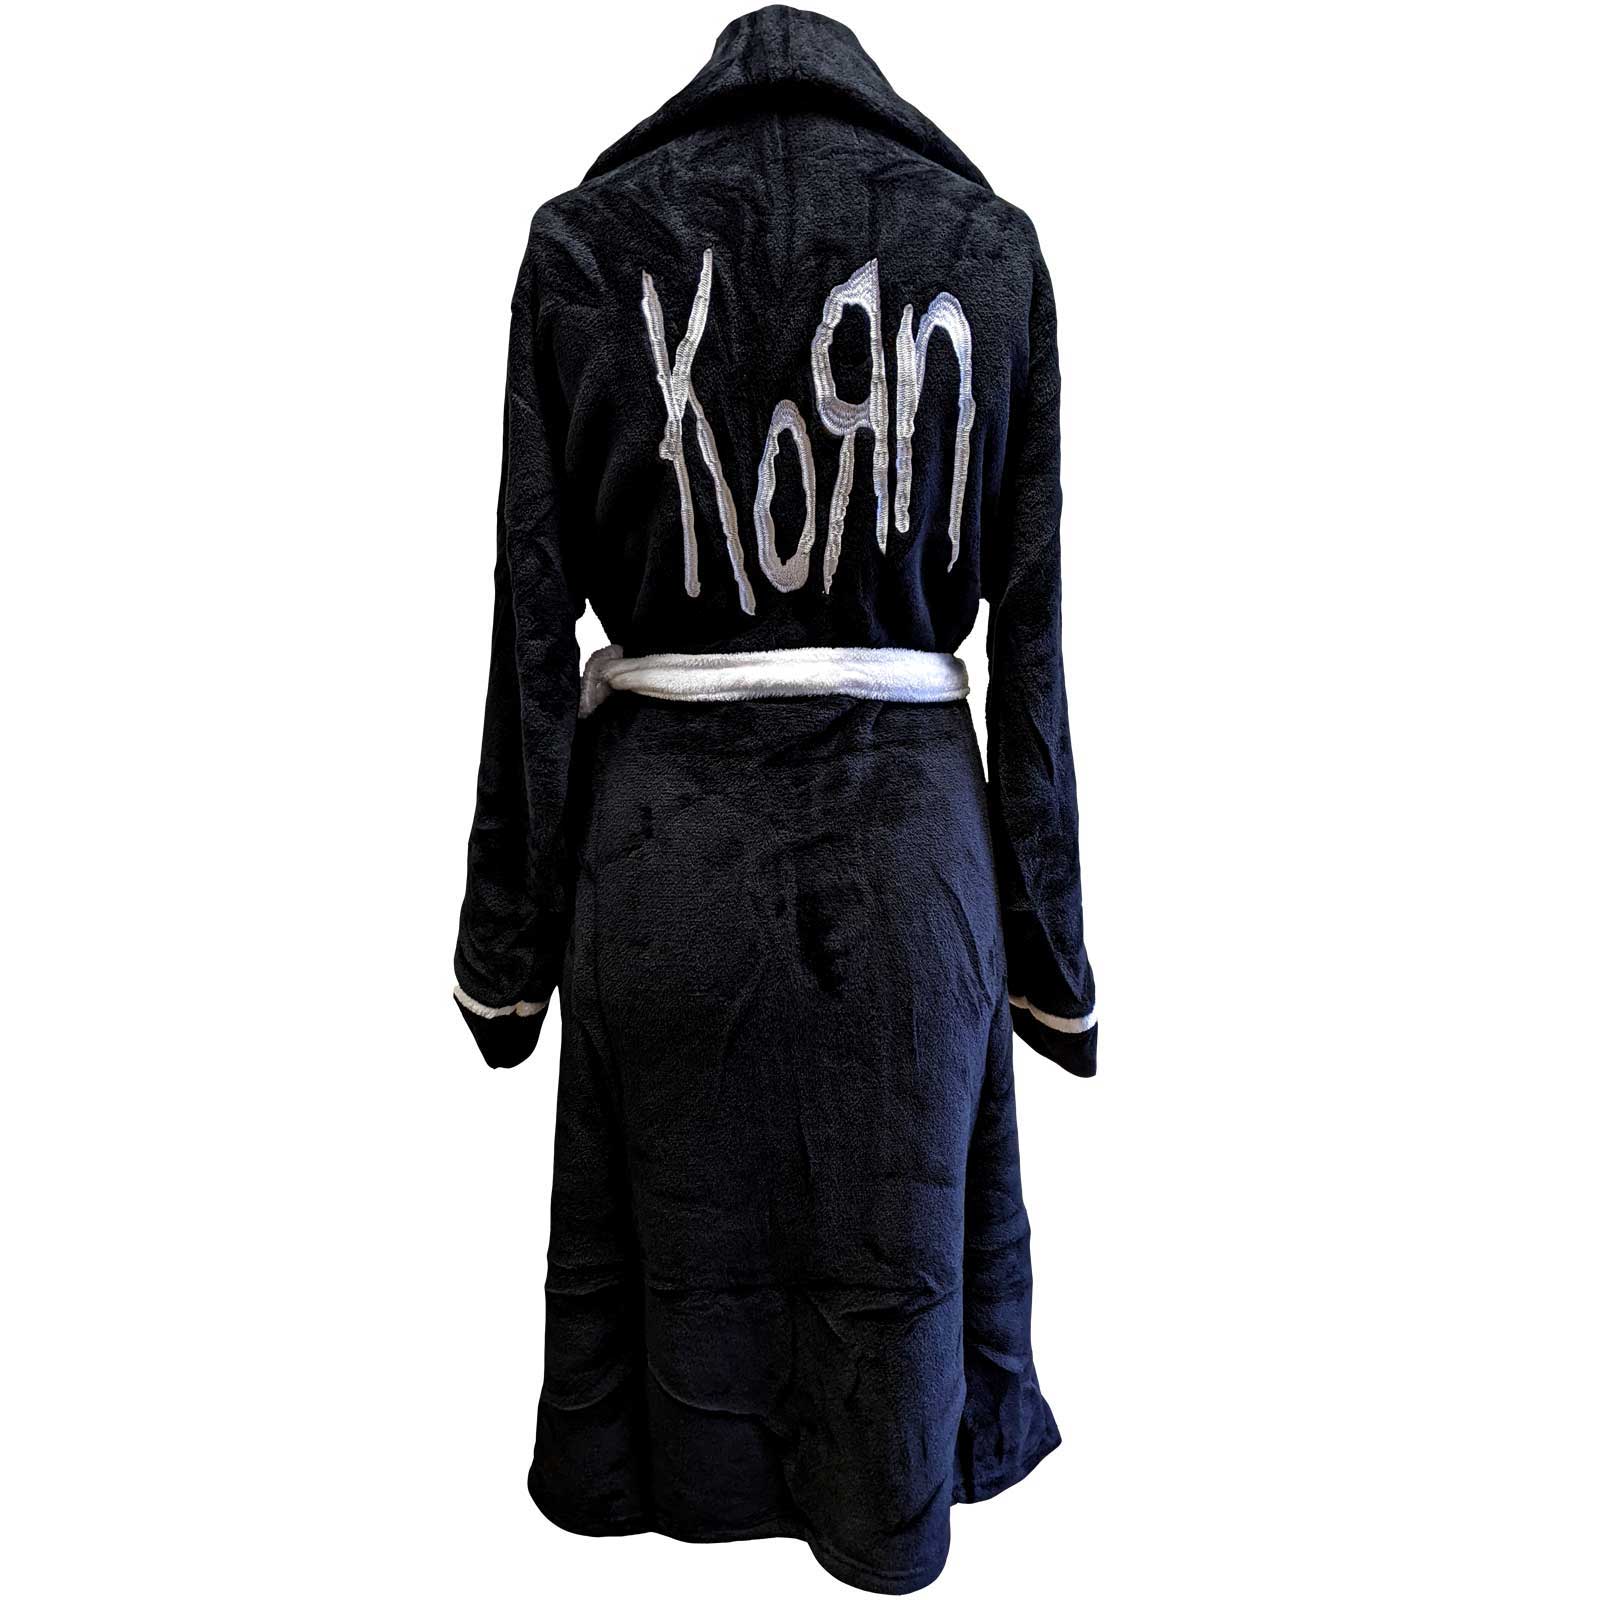 Korn Bathrobe - Logo Design - Official Licensed Music Design - Worldwide Shipping